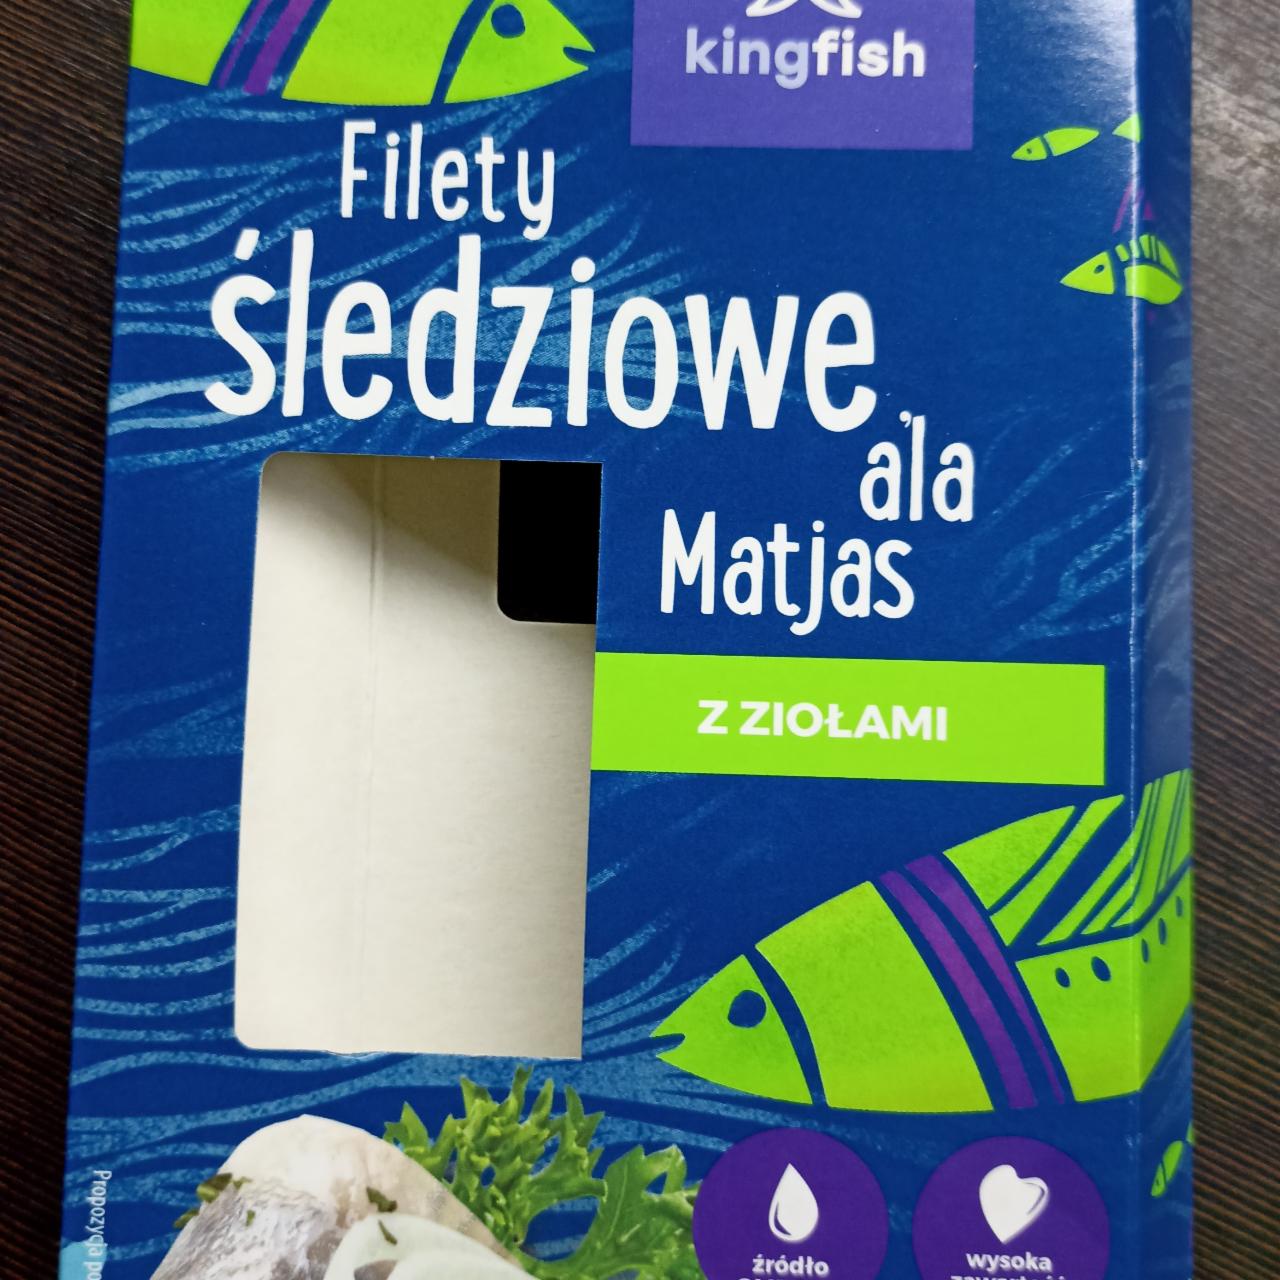 Zdjęcia - Filety śledziowe ala Matjas z ziołami Kingfish